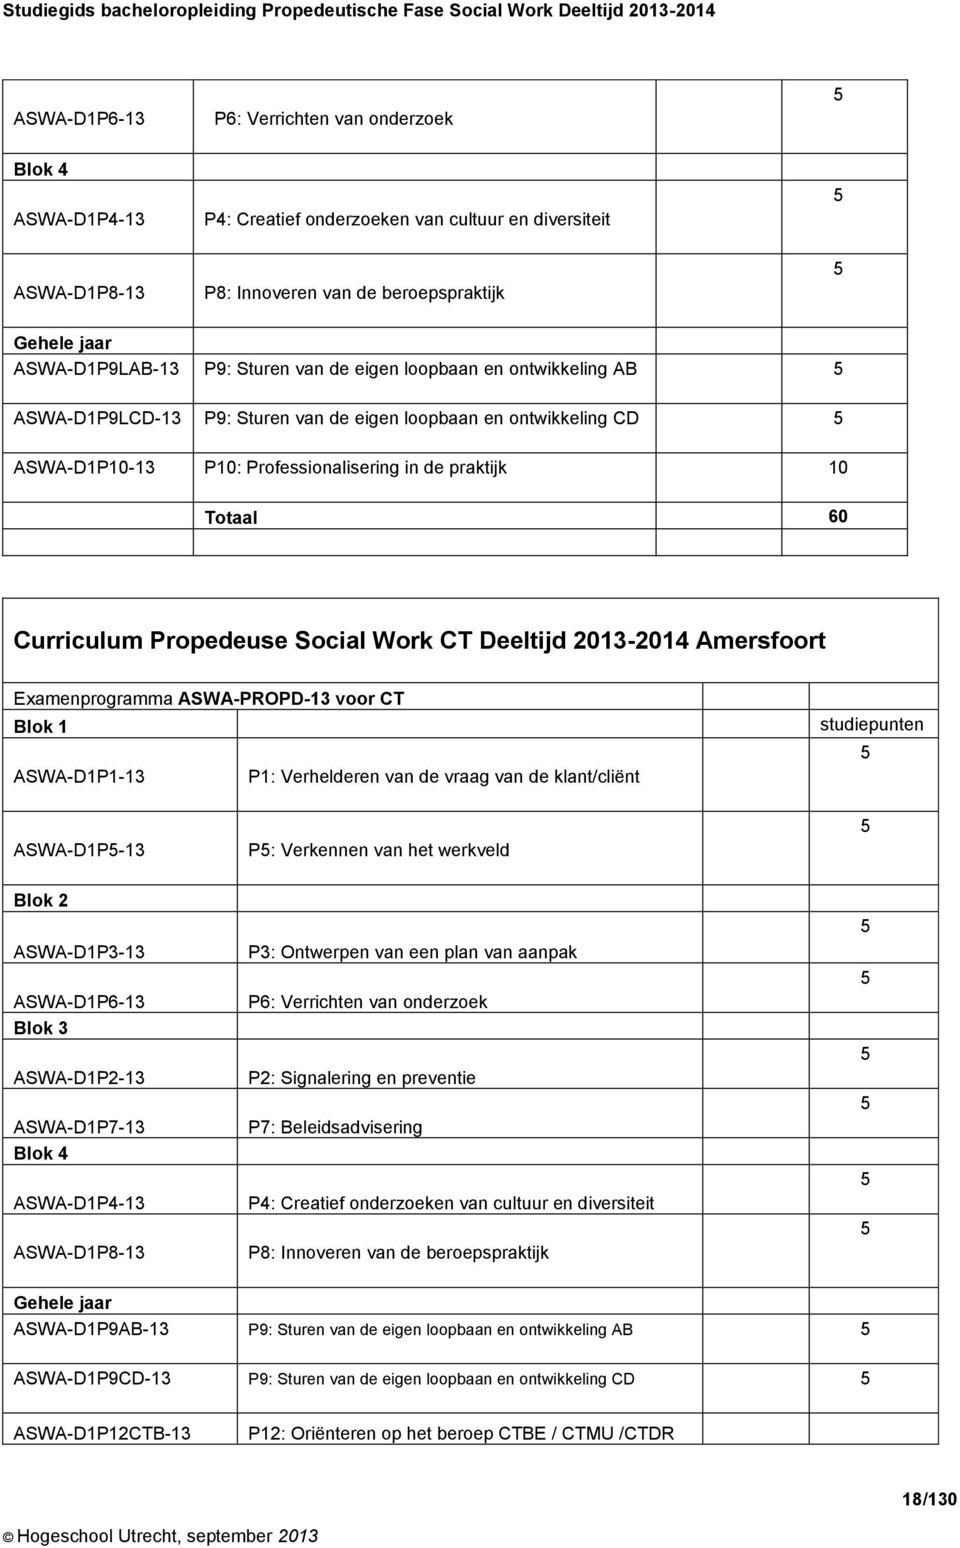 Curriculum Propedeuse Social Work CT Deeltijd 2013-2014 Amersfoort Examenprogramma ASWA-PROPD-13 voor CT Blok 1 ASWA-D1P1-13 P1: Verhelderen van de vraag van de klant/cliënt studiepunten 5